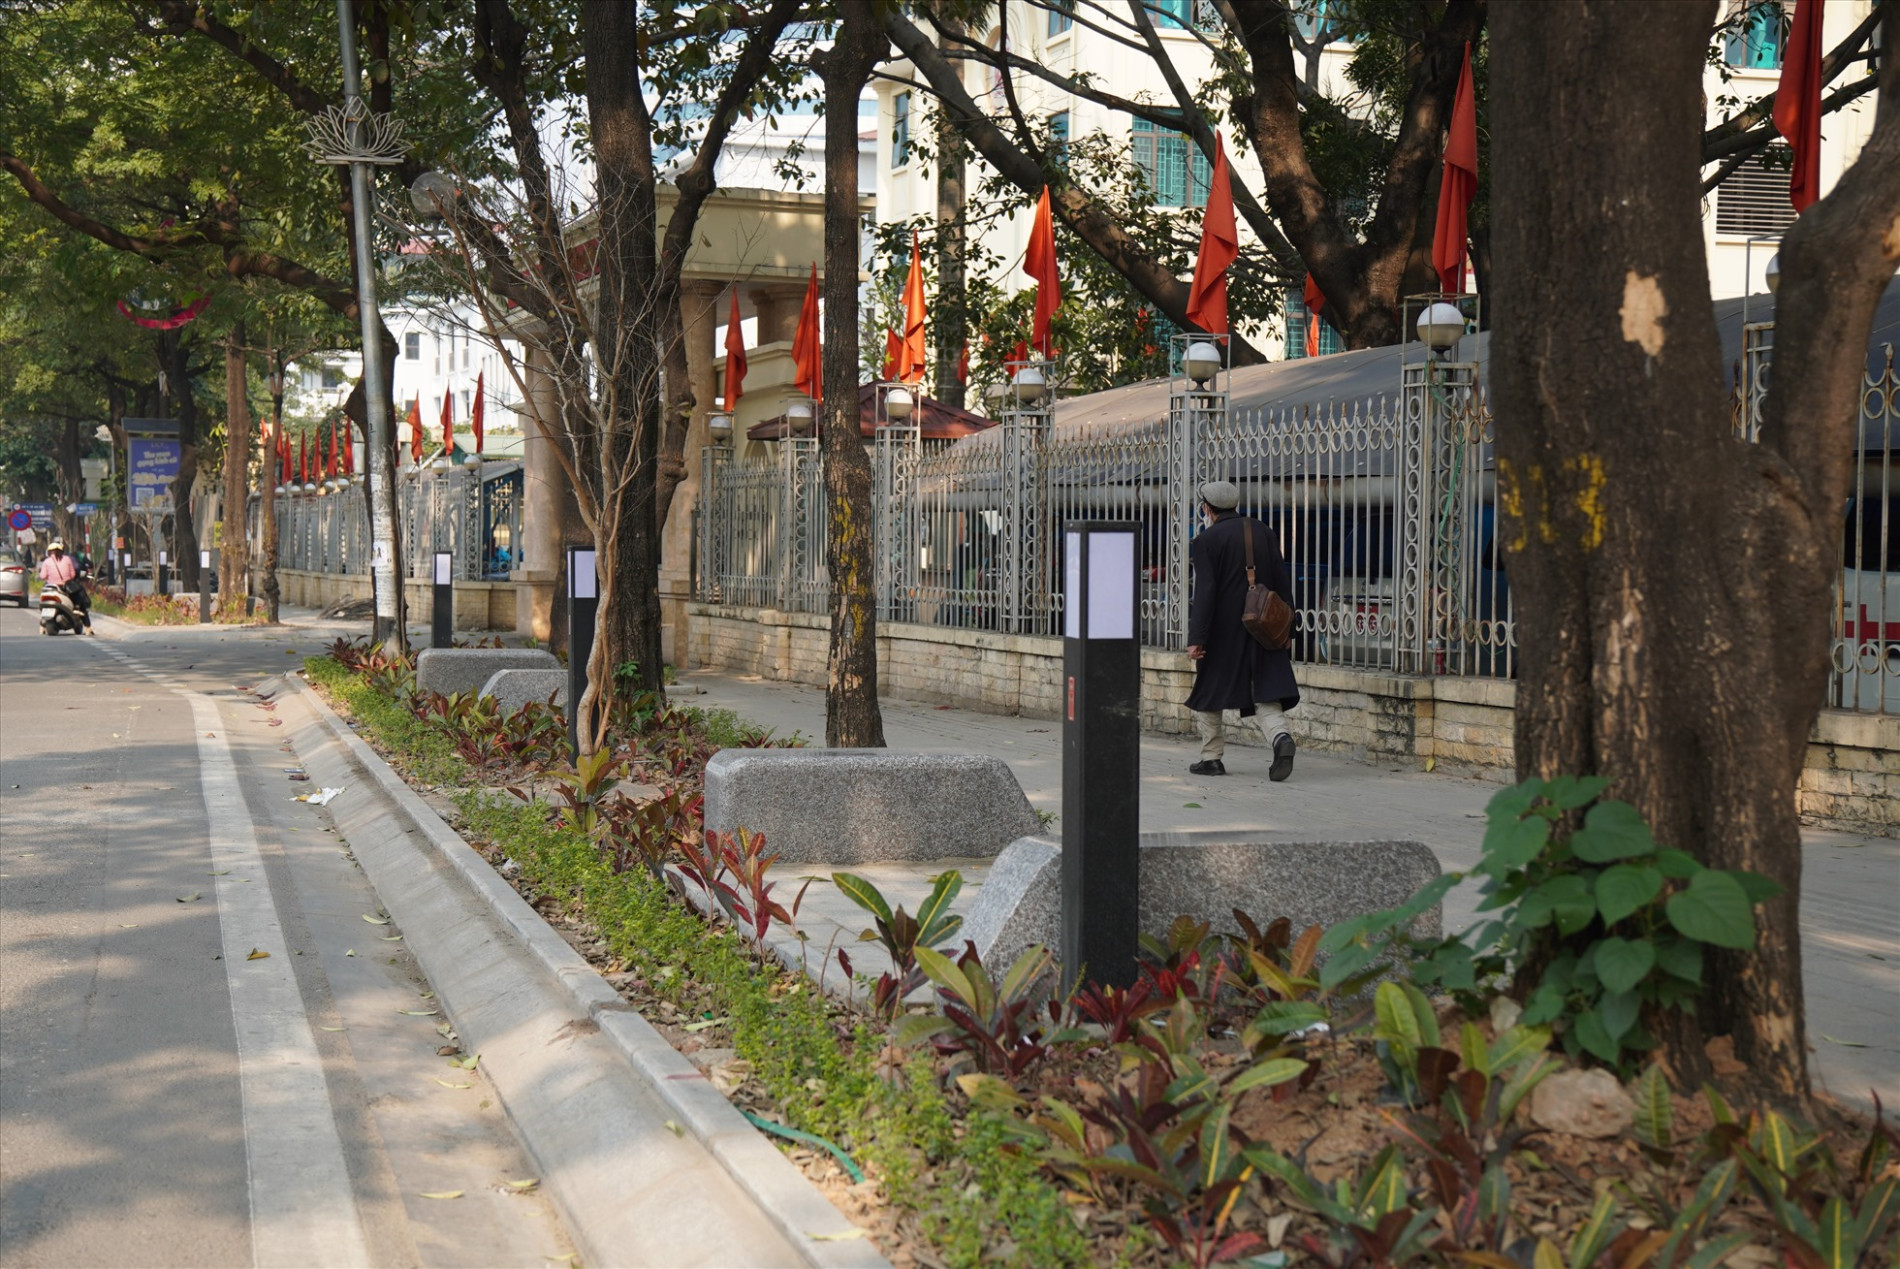 Cùng với việc bổ sung thêm hệ thống cây xanh, thảm hoa sát tận mép đường, tuyến phố Nguyễn Chí Thanh đã sạch đẹp và văn minh hơn so với thời điểm trước đây.